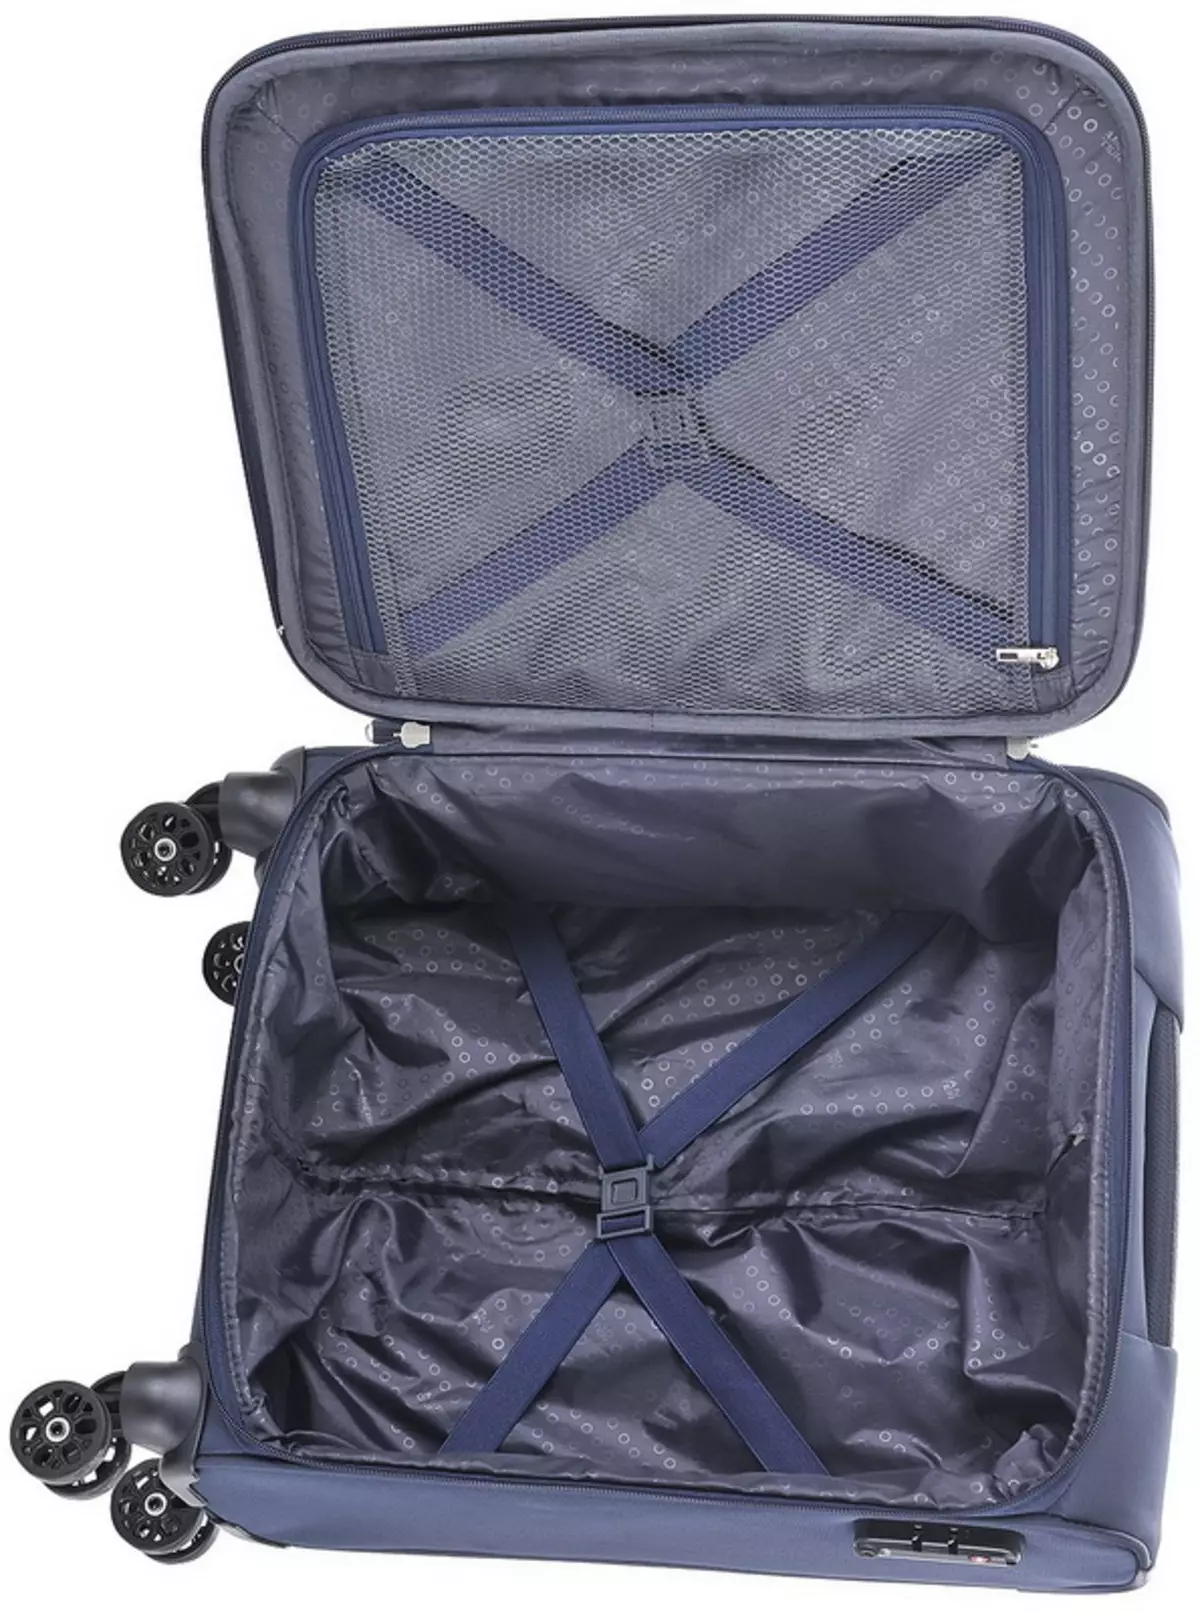 چمدان برای چمدان دست: اندازه آنها در هواپیما، چمدان های کوچک 55x40x20 در چرخ ها و دیگران، امتیاز بهترین مدل های نور 13627_31